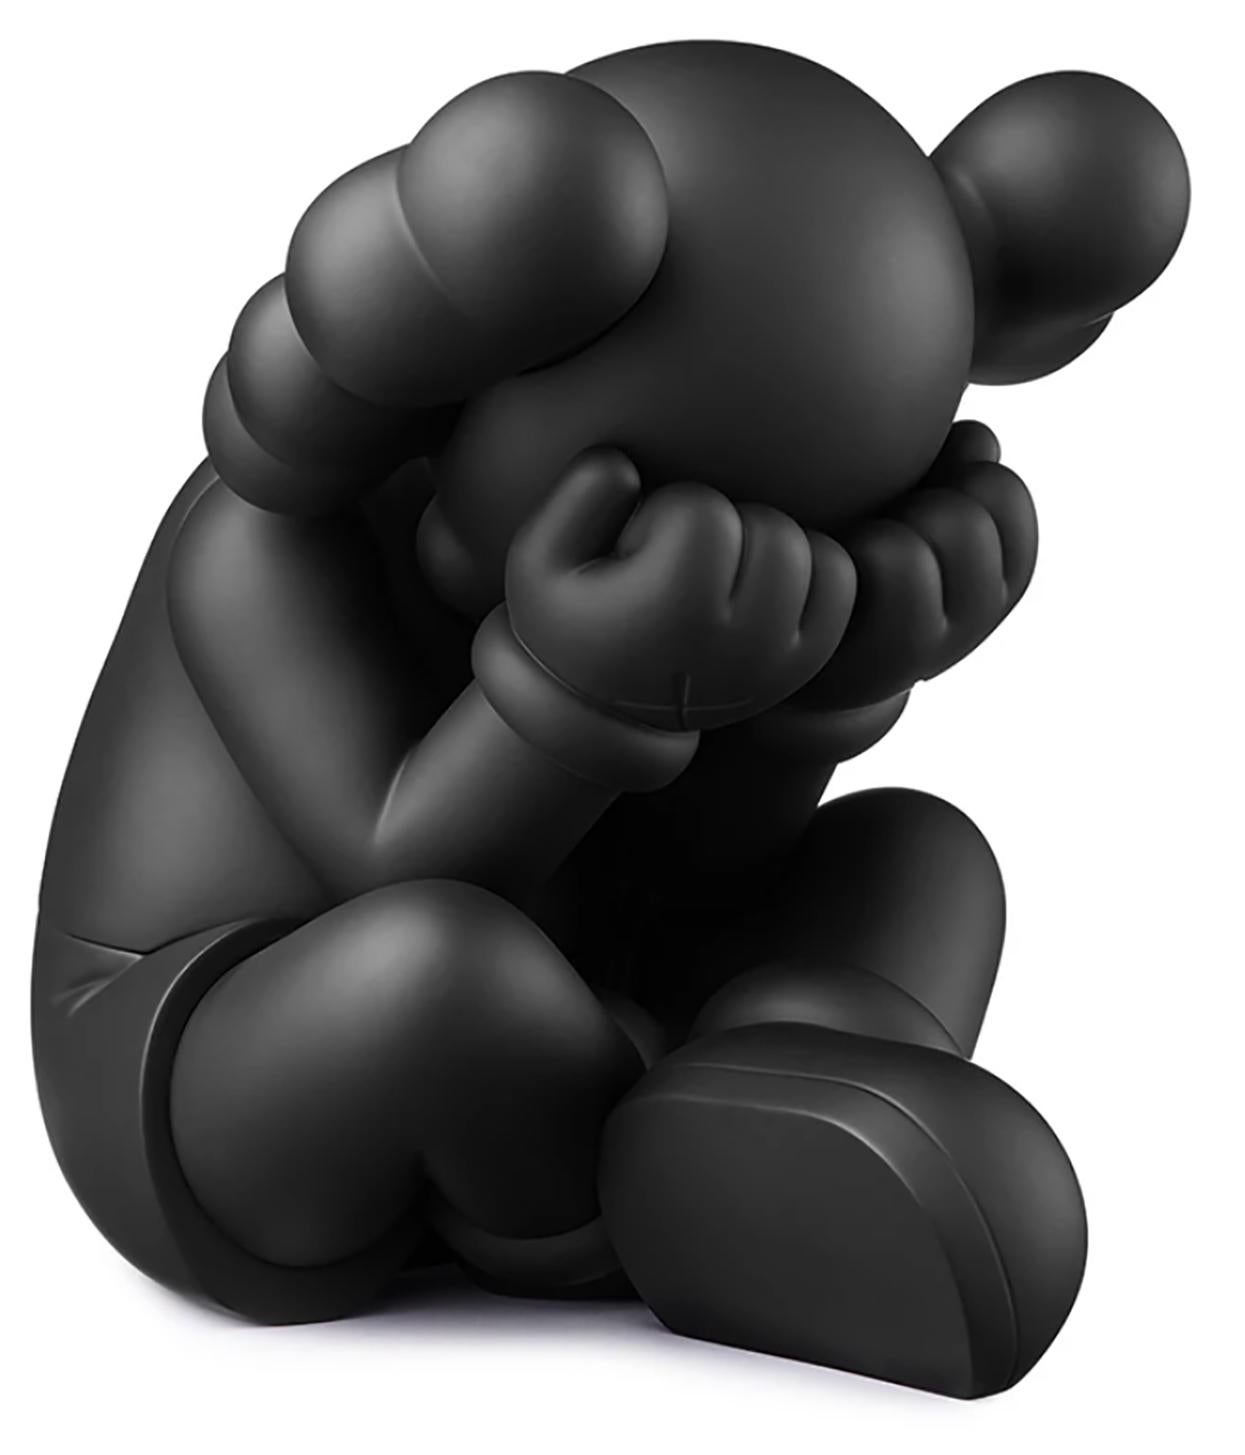 COMPAGNON SÉPARÉ DE KAWS : Neuf et non ouvert dans son emballage d'origine :
Cette figure noire SEPARATED de KAWS, hautement collectionnable, est dérivée de la sculpture à plus grande échelle de l'artiste basée à Brooklyn (initialement construite en